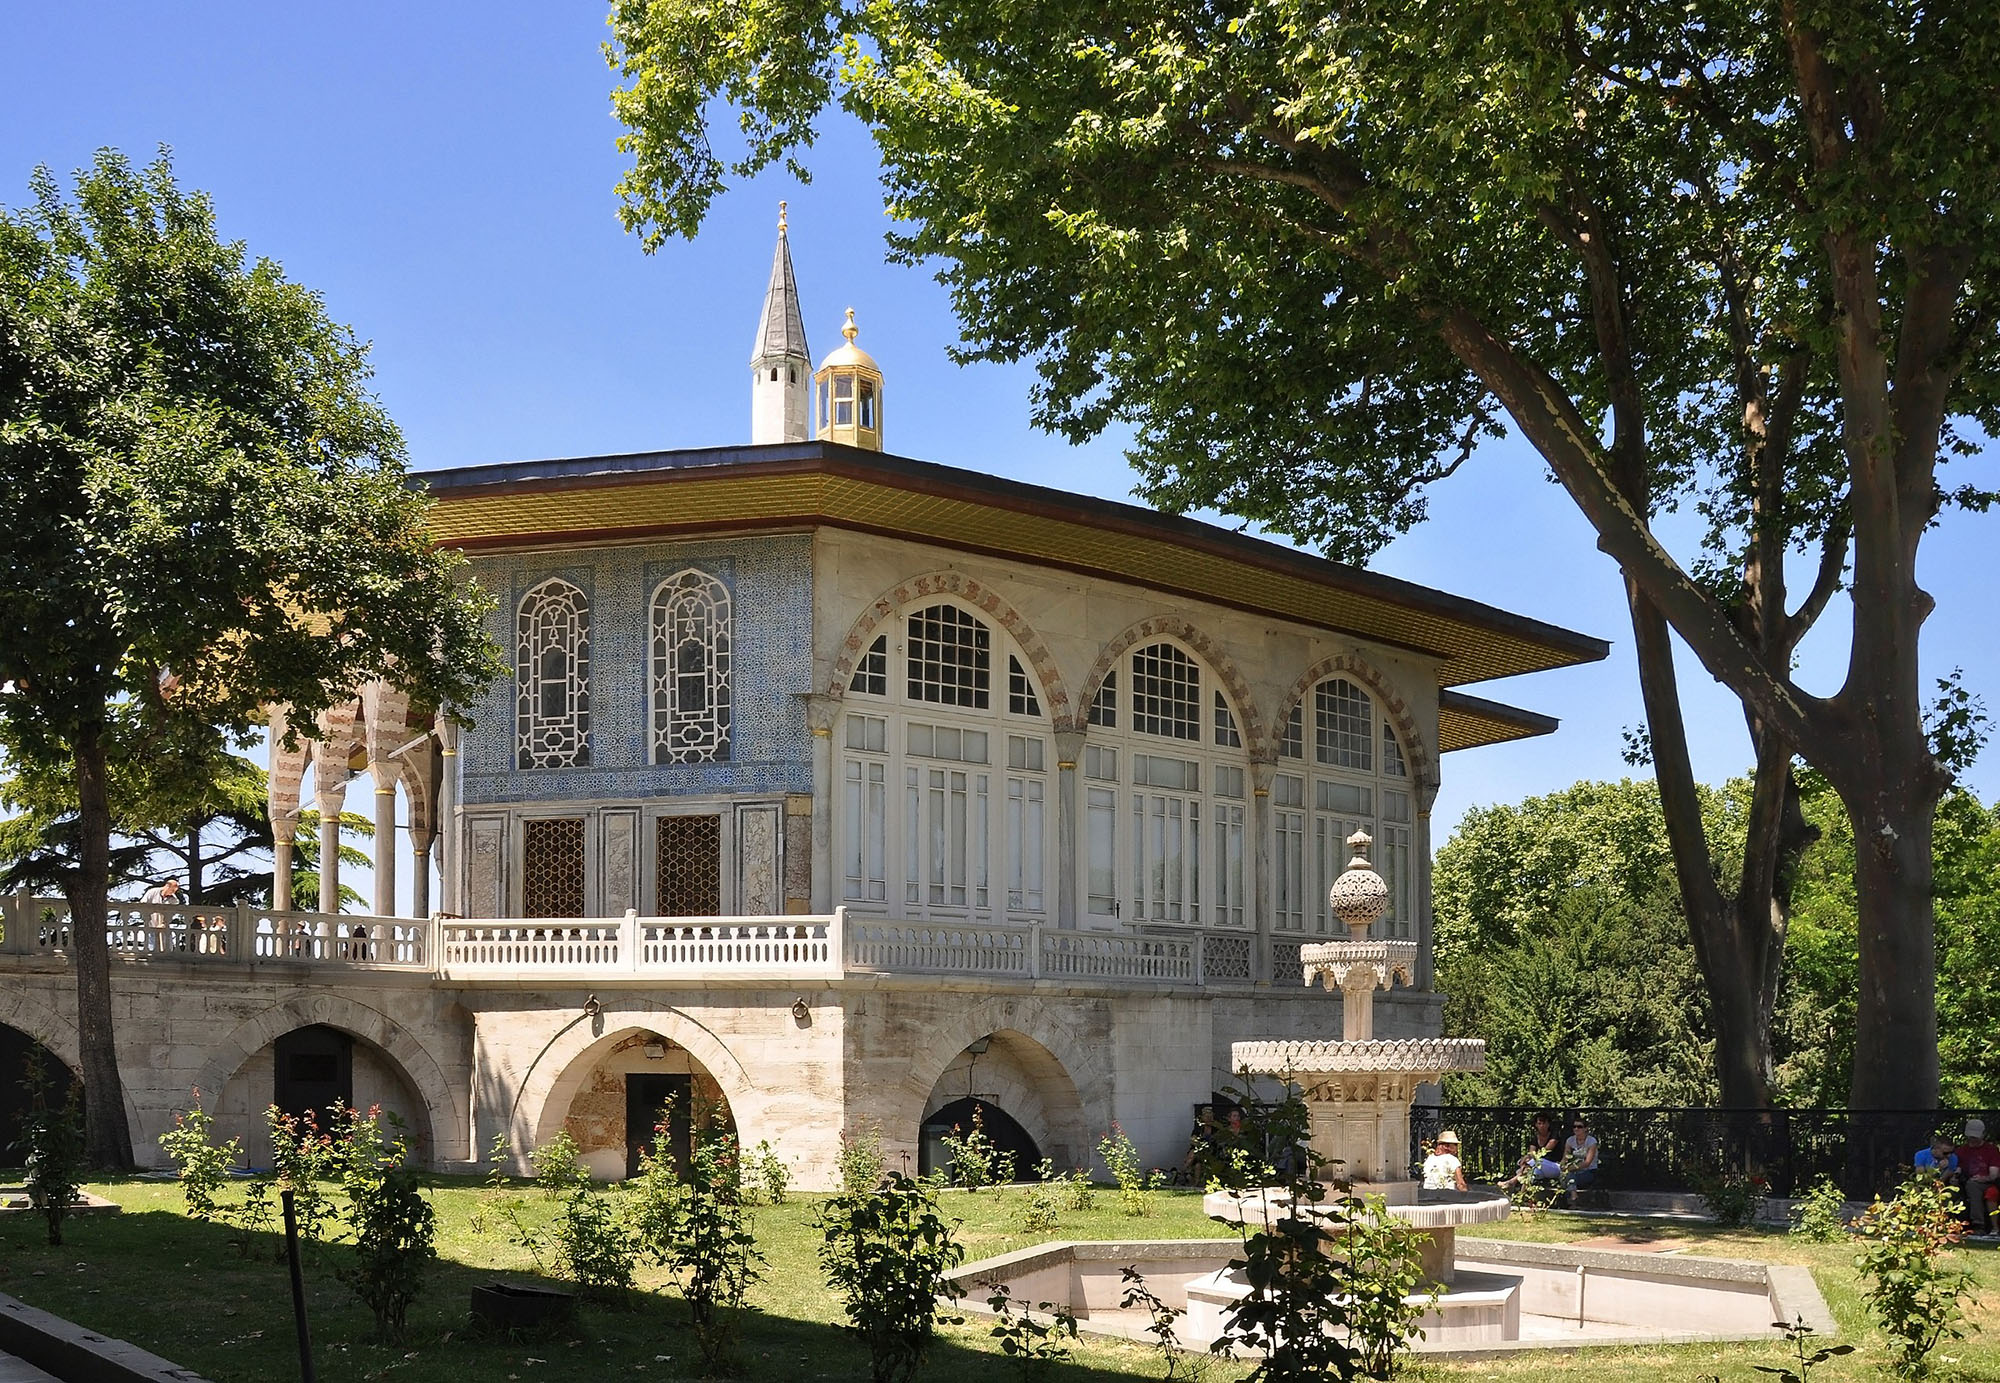 Багдадский павильон (Bağdat Köşkü) во дворце султана в Стамбуле